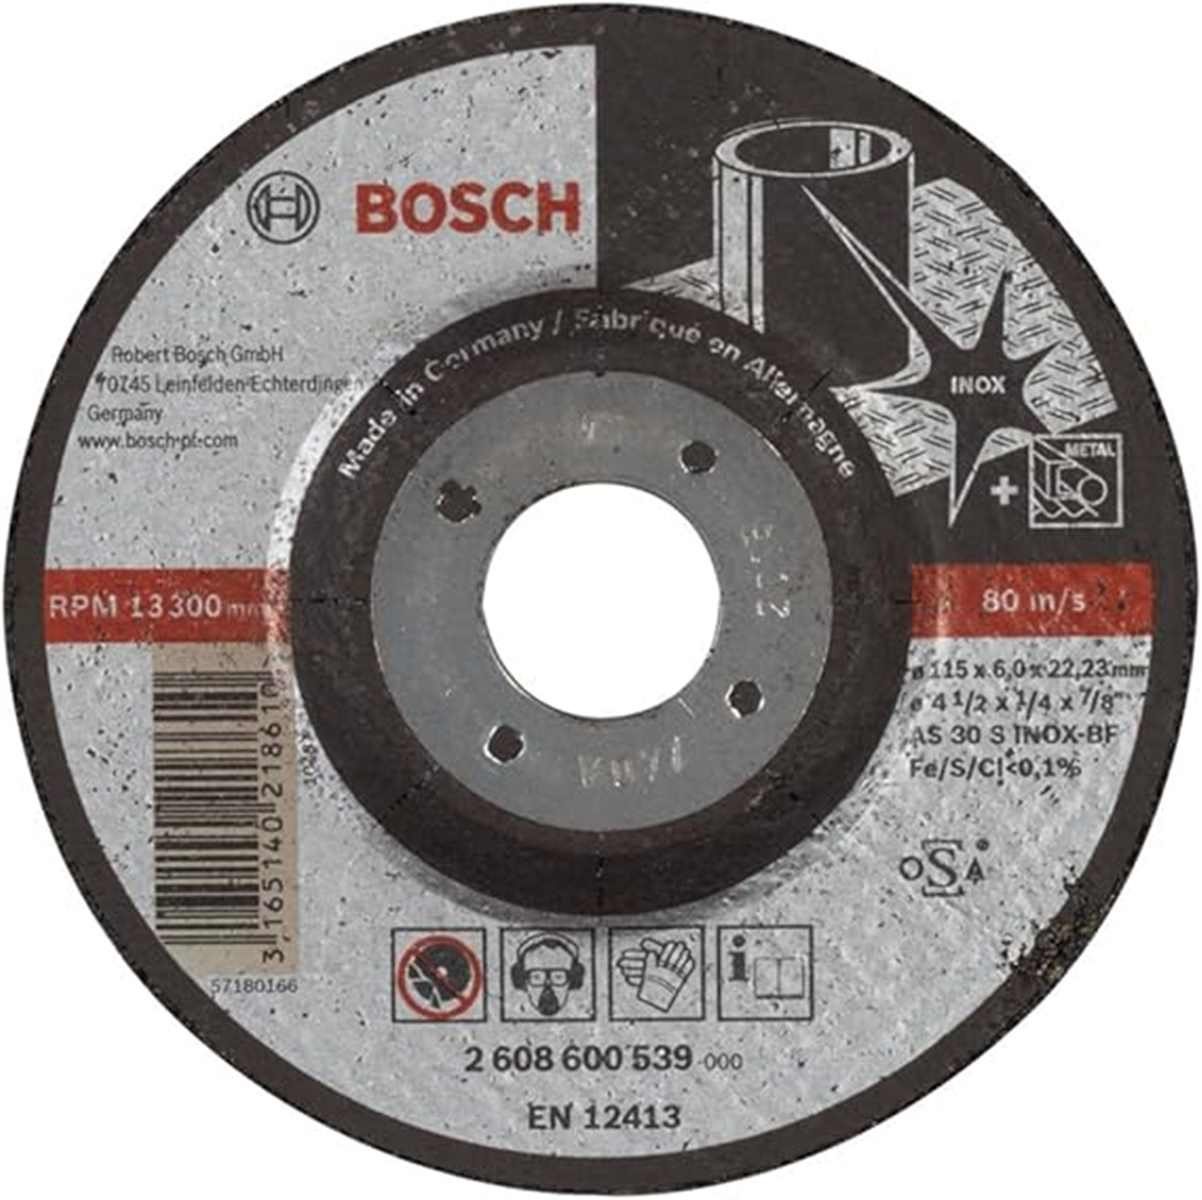 INOX gekröpft S Schruppscheibe BF, Bosch Ø 6.0 BOSCH Expert 115 30 AS mm, Bohrfutter mm